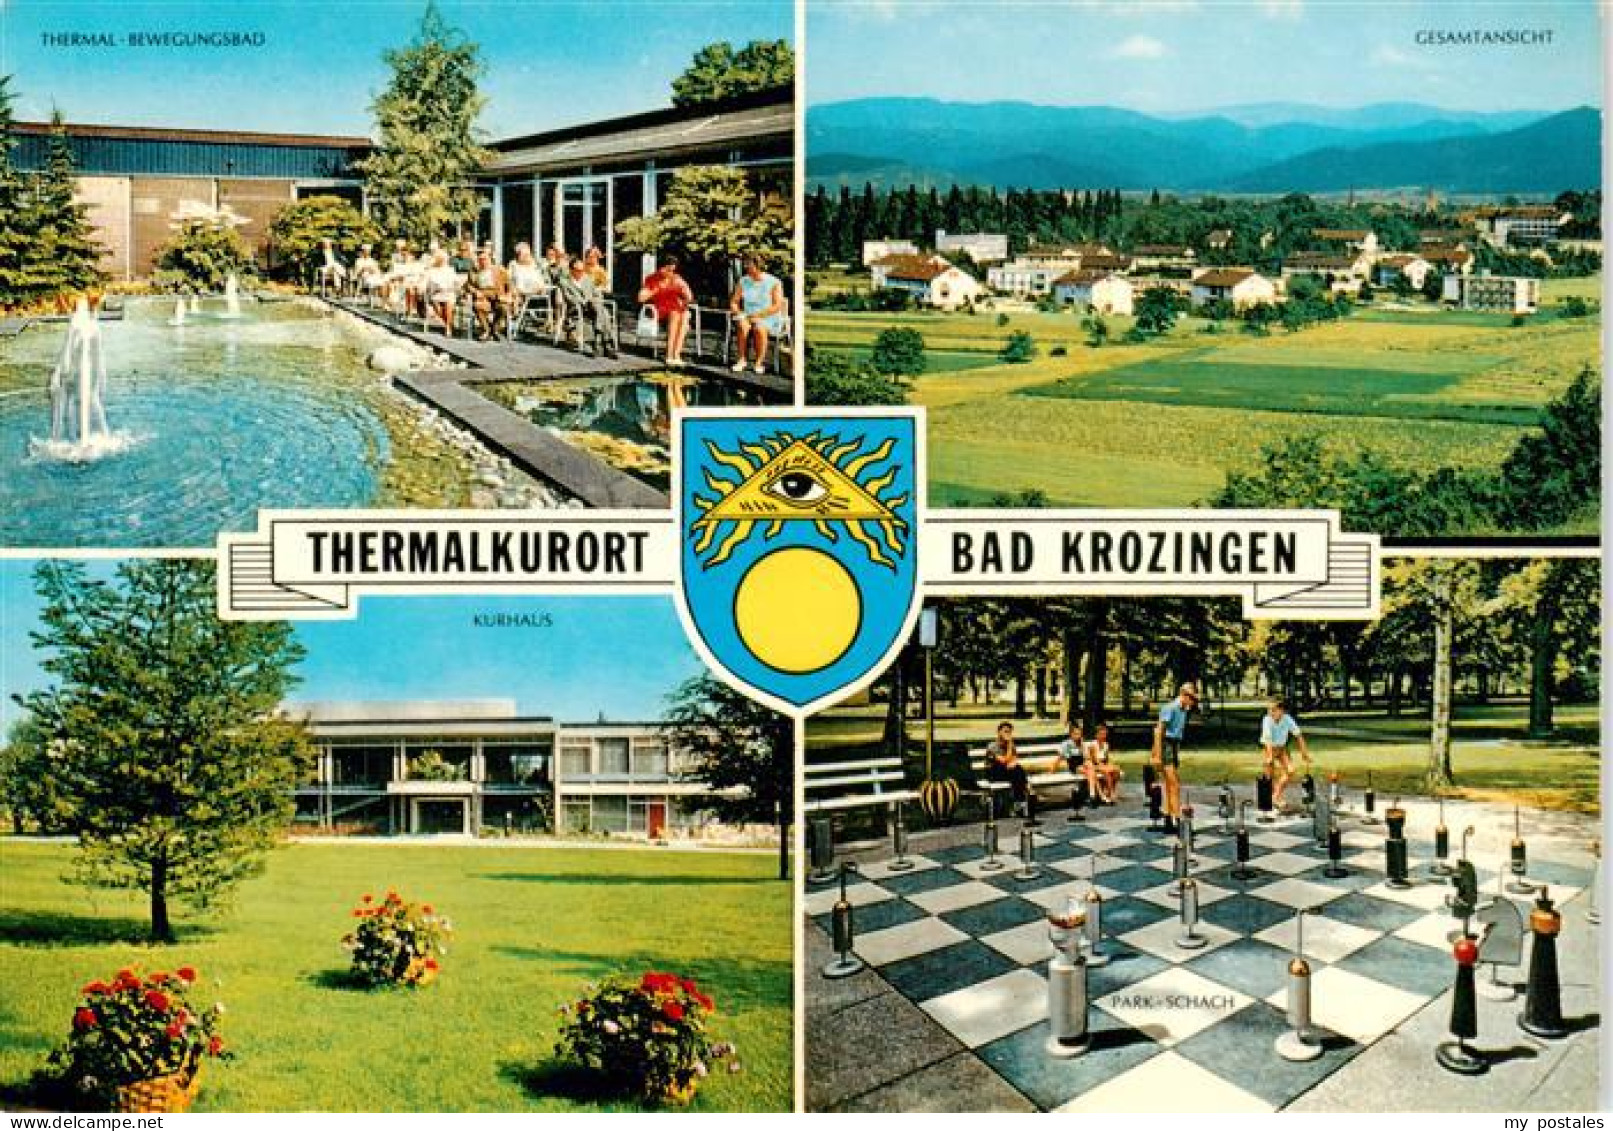 73934463 Bad_Krozingen Thermalkurort Park-Schach - Bad Krozingen